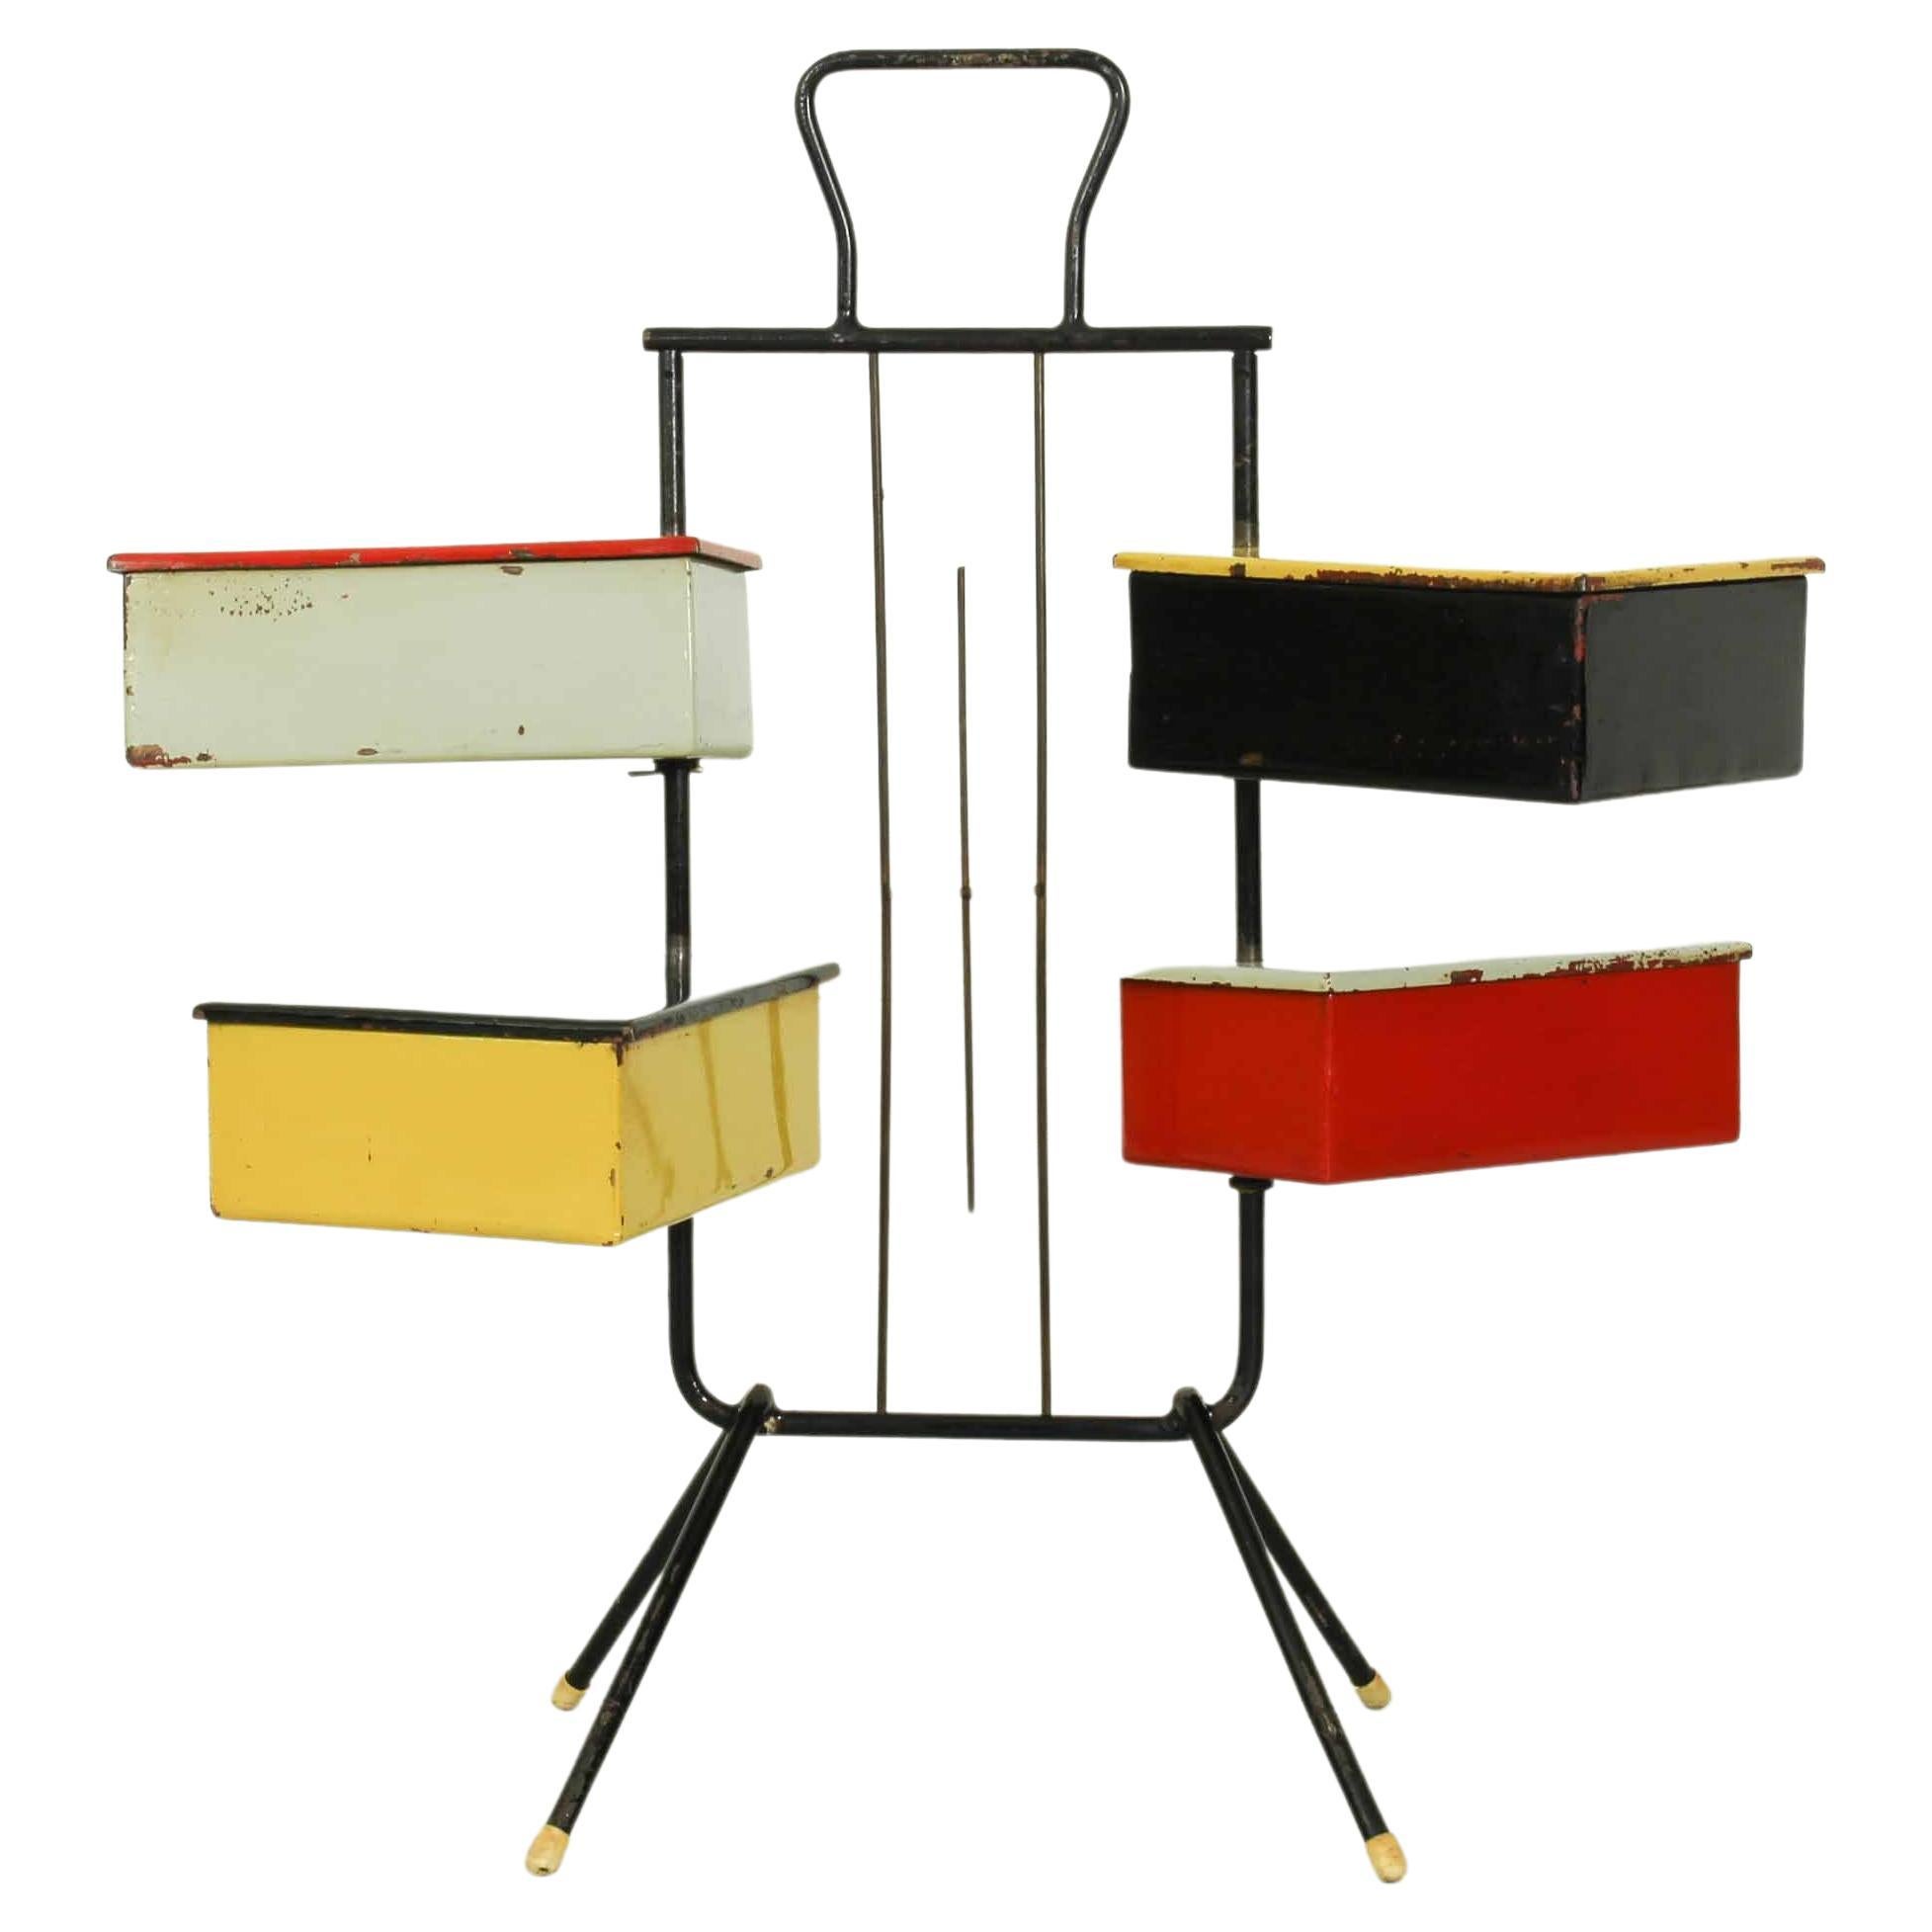 Dieser Nähständer mit 4 Kästen aus den 1950er Jahren wurde von Joos Teders für Metalux entworfen. Es hat vier farbige Metallkästen (die sich um den Metallständer drehen können), die diesem Artikel einen Rietveld-Stil verleihen. Dieser Artikel hat